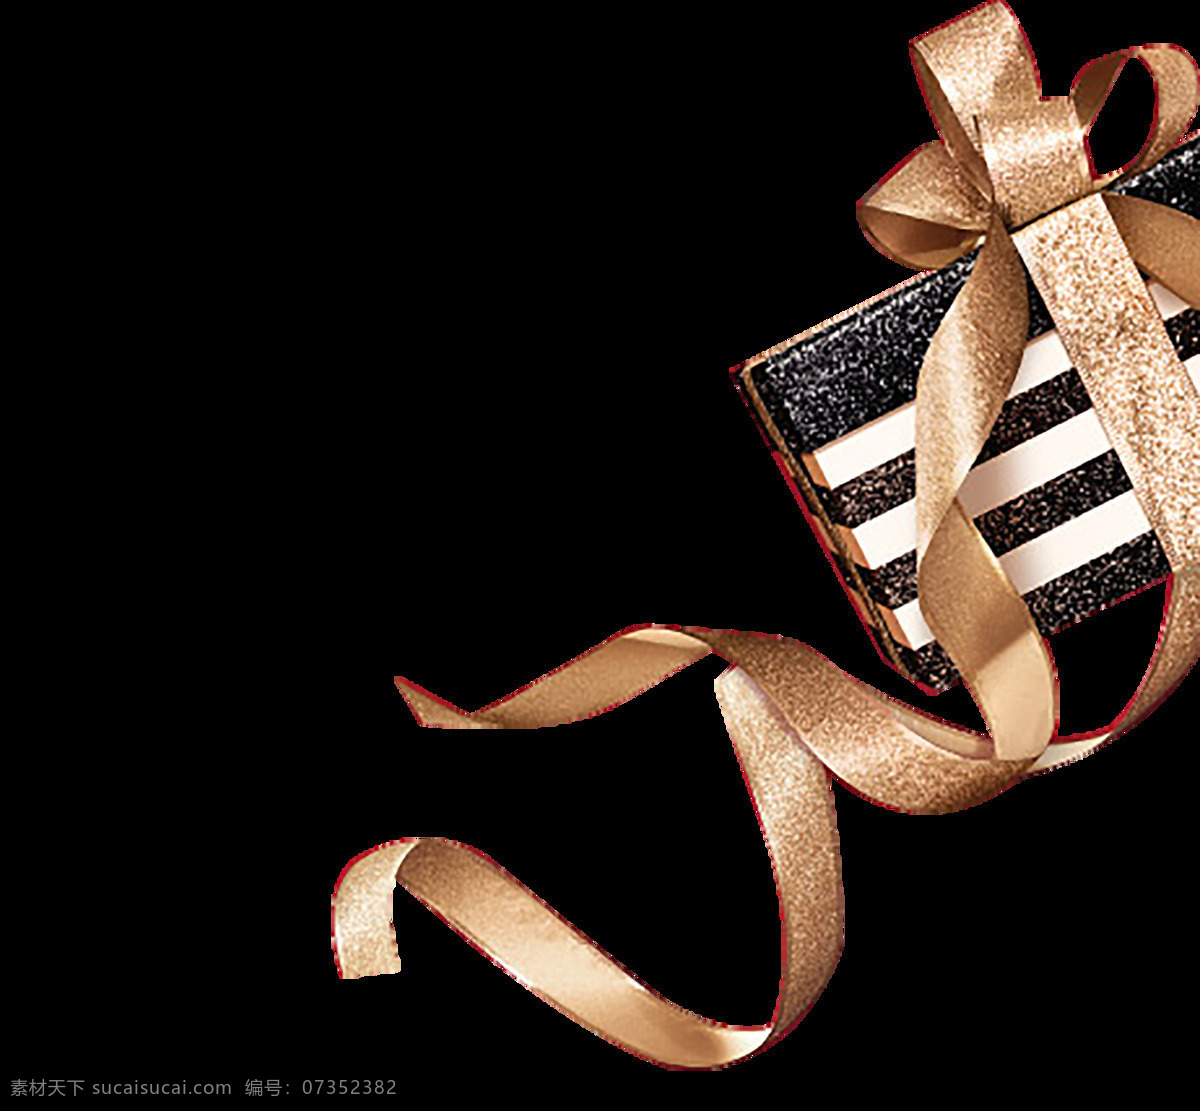 蝴蝶结图片 蝴蝶结 彩带 织带 绸带 丝带 纺织品 礼物包装 红色缎带 圣诞节 烘焙包装 饰品包装 巧克力包装 化妆品包装 奢侈品包装 礼品 红色 装饰 礼物